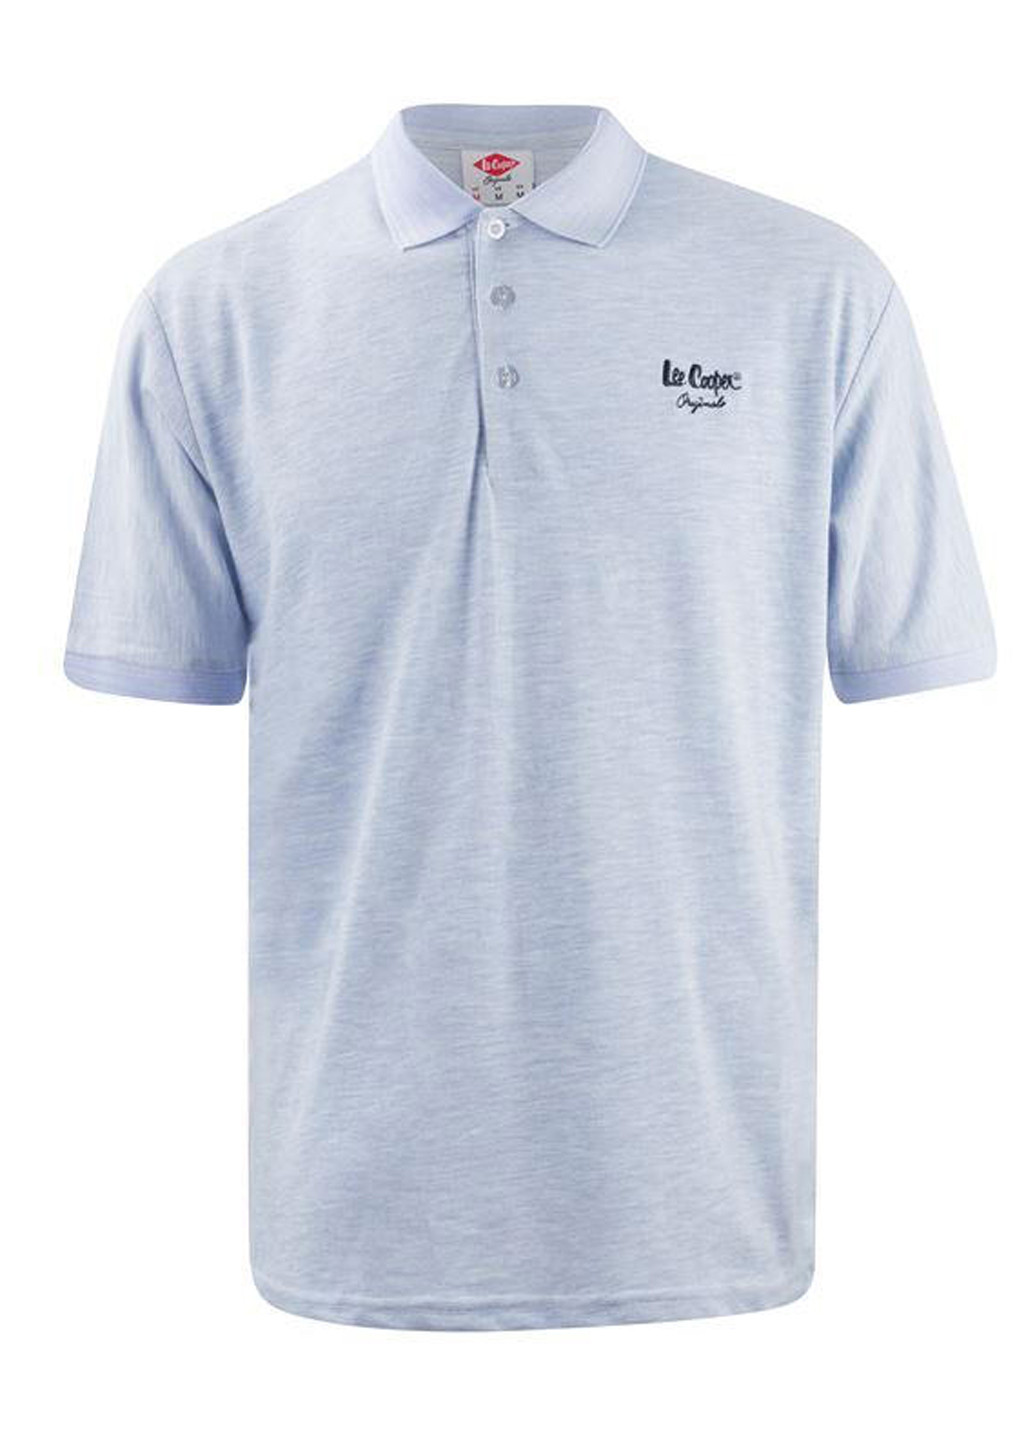 Небесно-голубой футболка-поло для мужчин Lee Cooper с логотипом